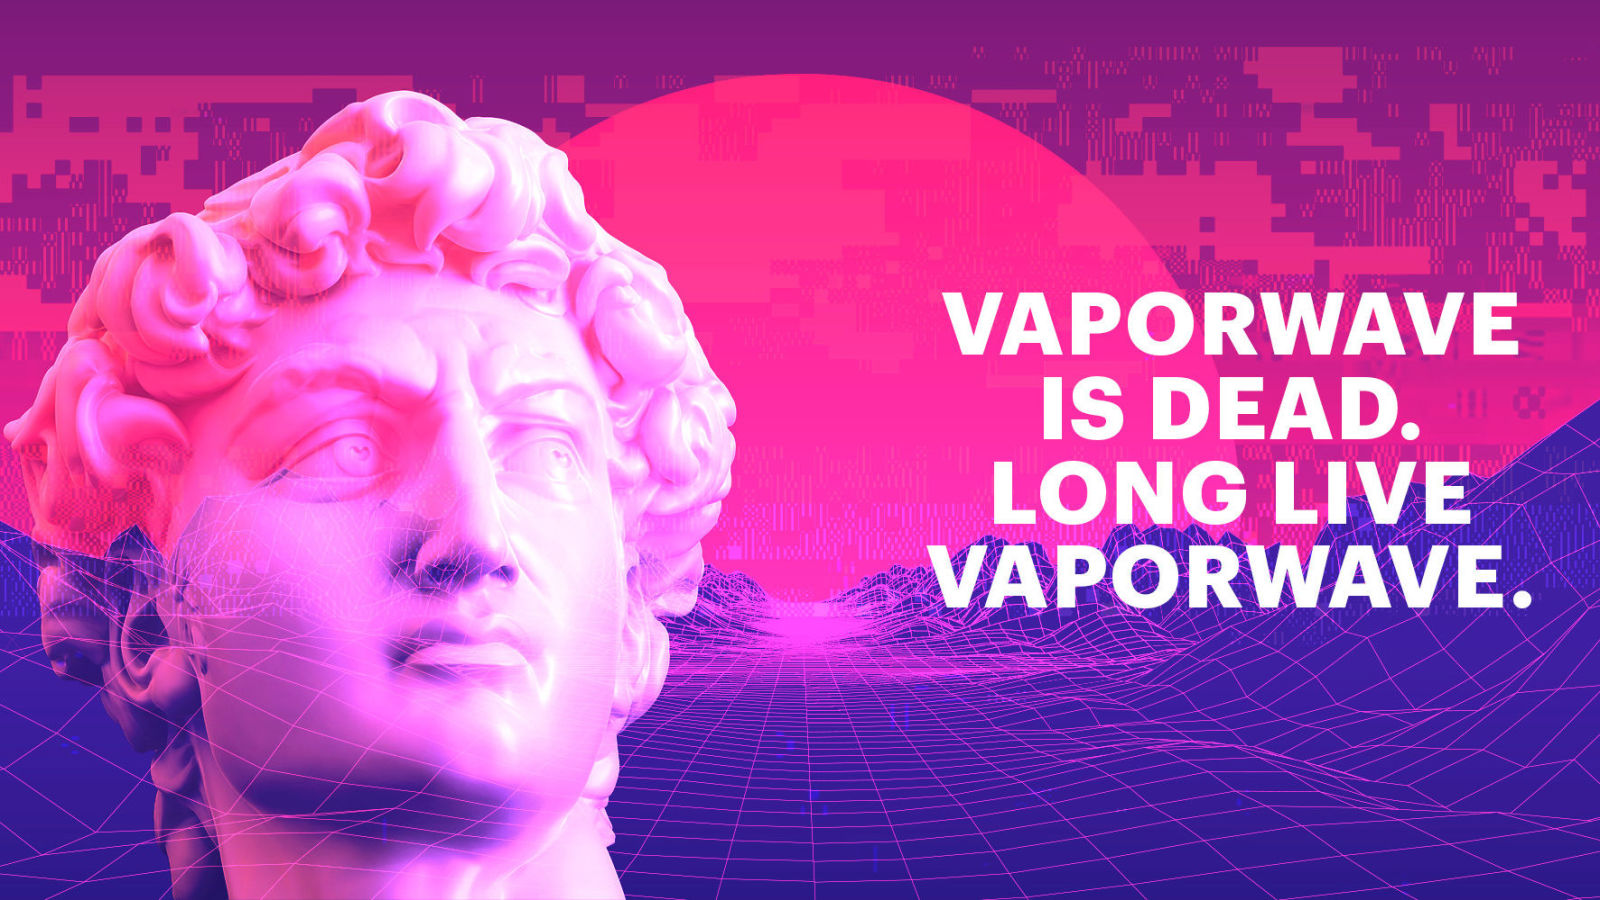 Vaporwave Is Dead Long Live Vaporwave - HD Wallpaper 